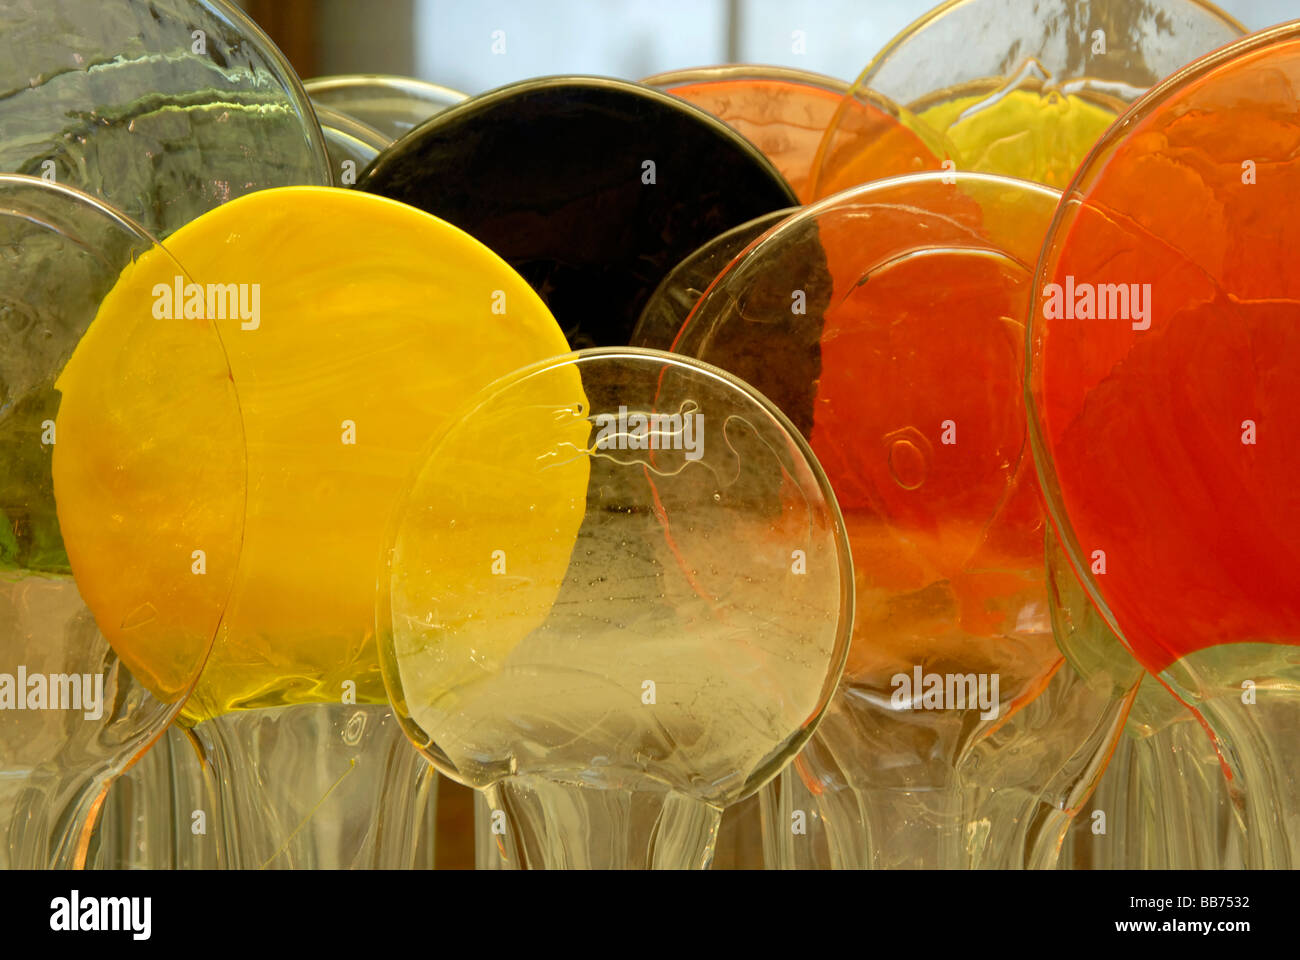 Les bonbons de couleur jaune et orange disques en verre détail de la sculpture de verre fini par Oiva Toikka artiste appelé 'Lollipop' Isle Banque D'Images